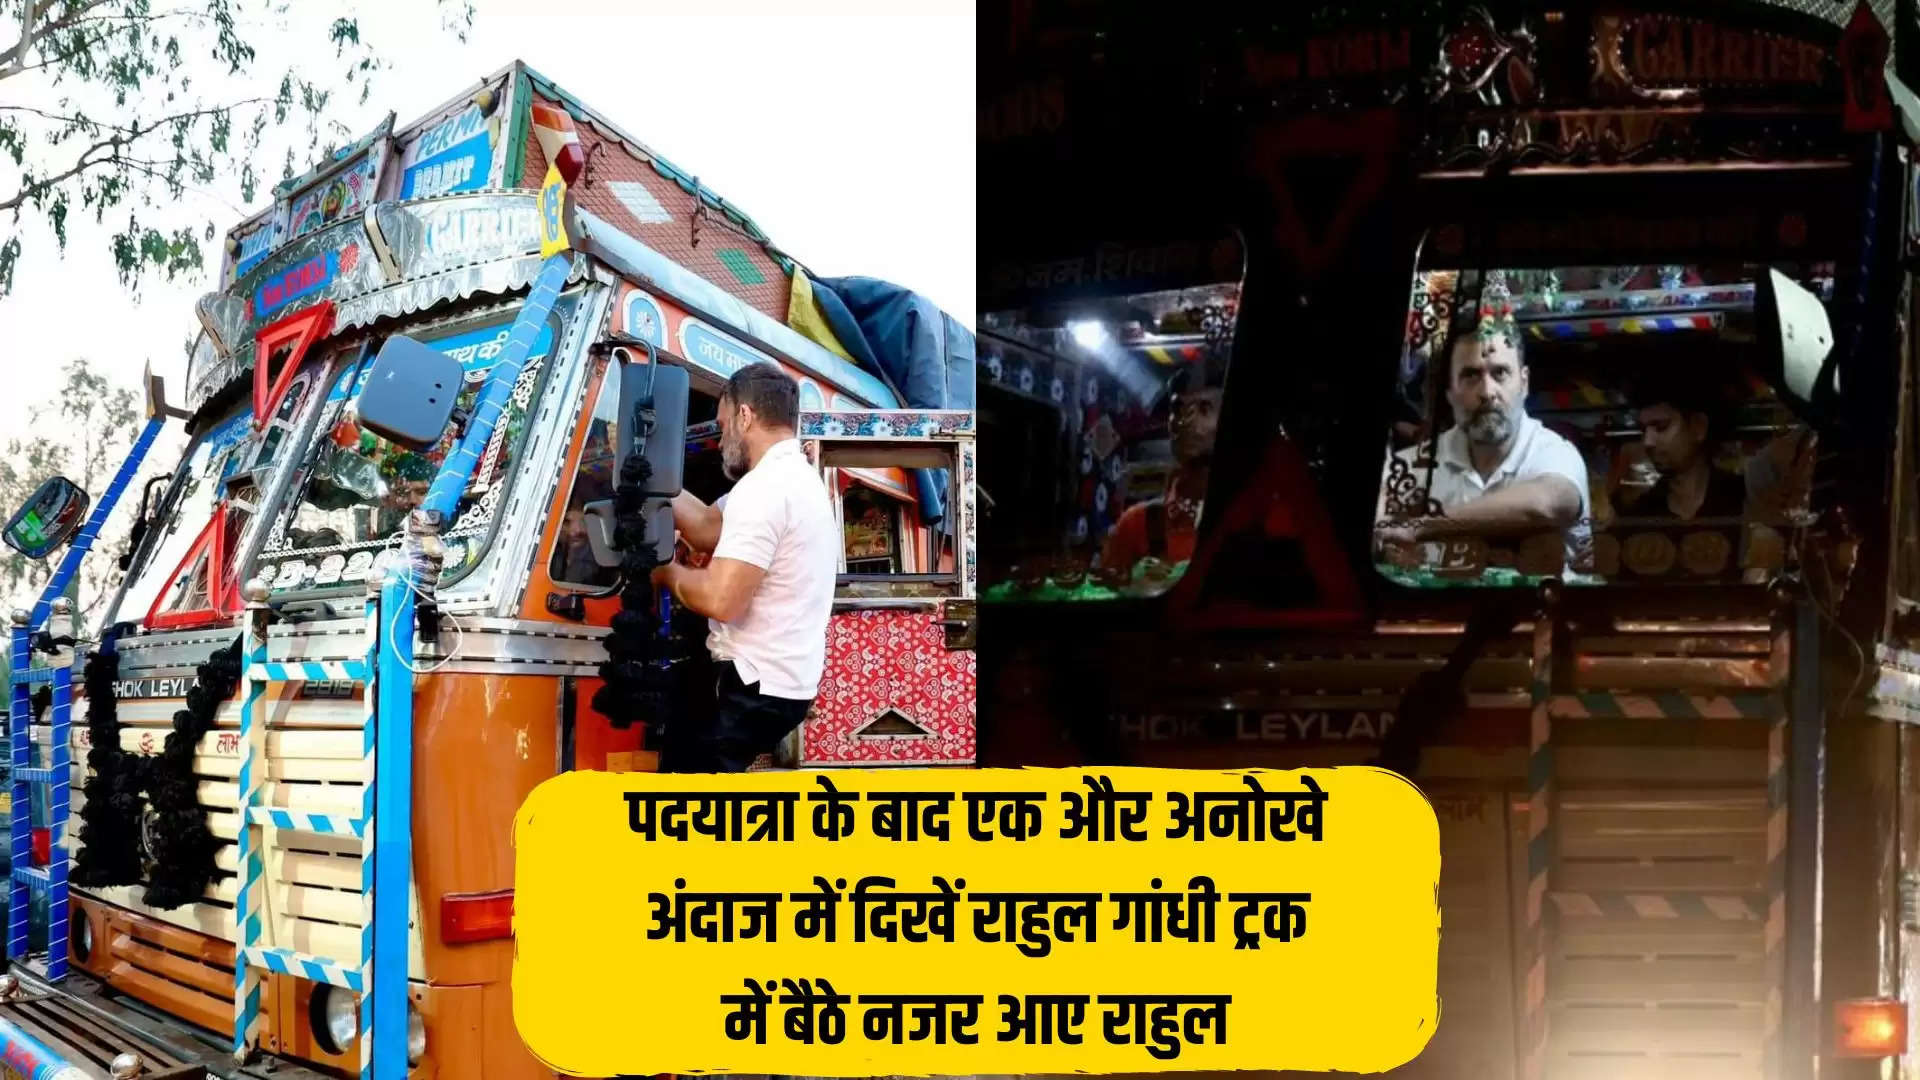 पदयात्रा के बाद एक और अनोखे अंदाज में दिखें राहुल गांधी,ट्रक में बैठे नजर आए राहुल